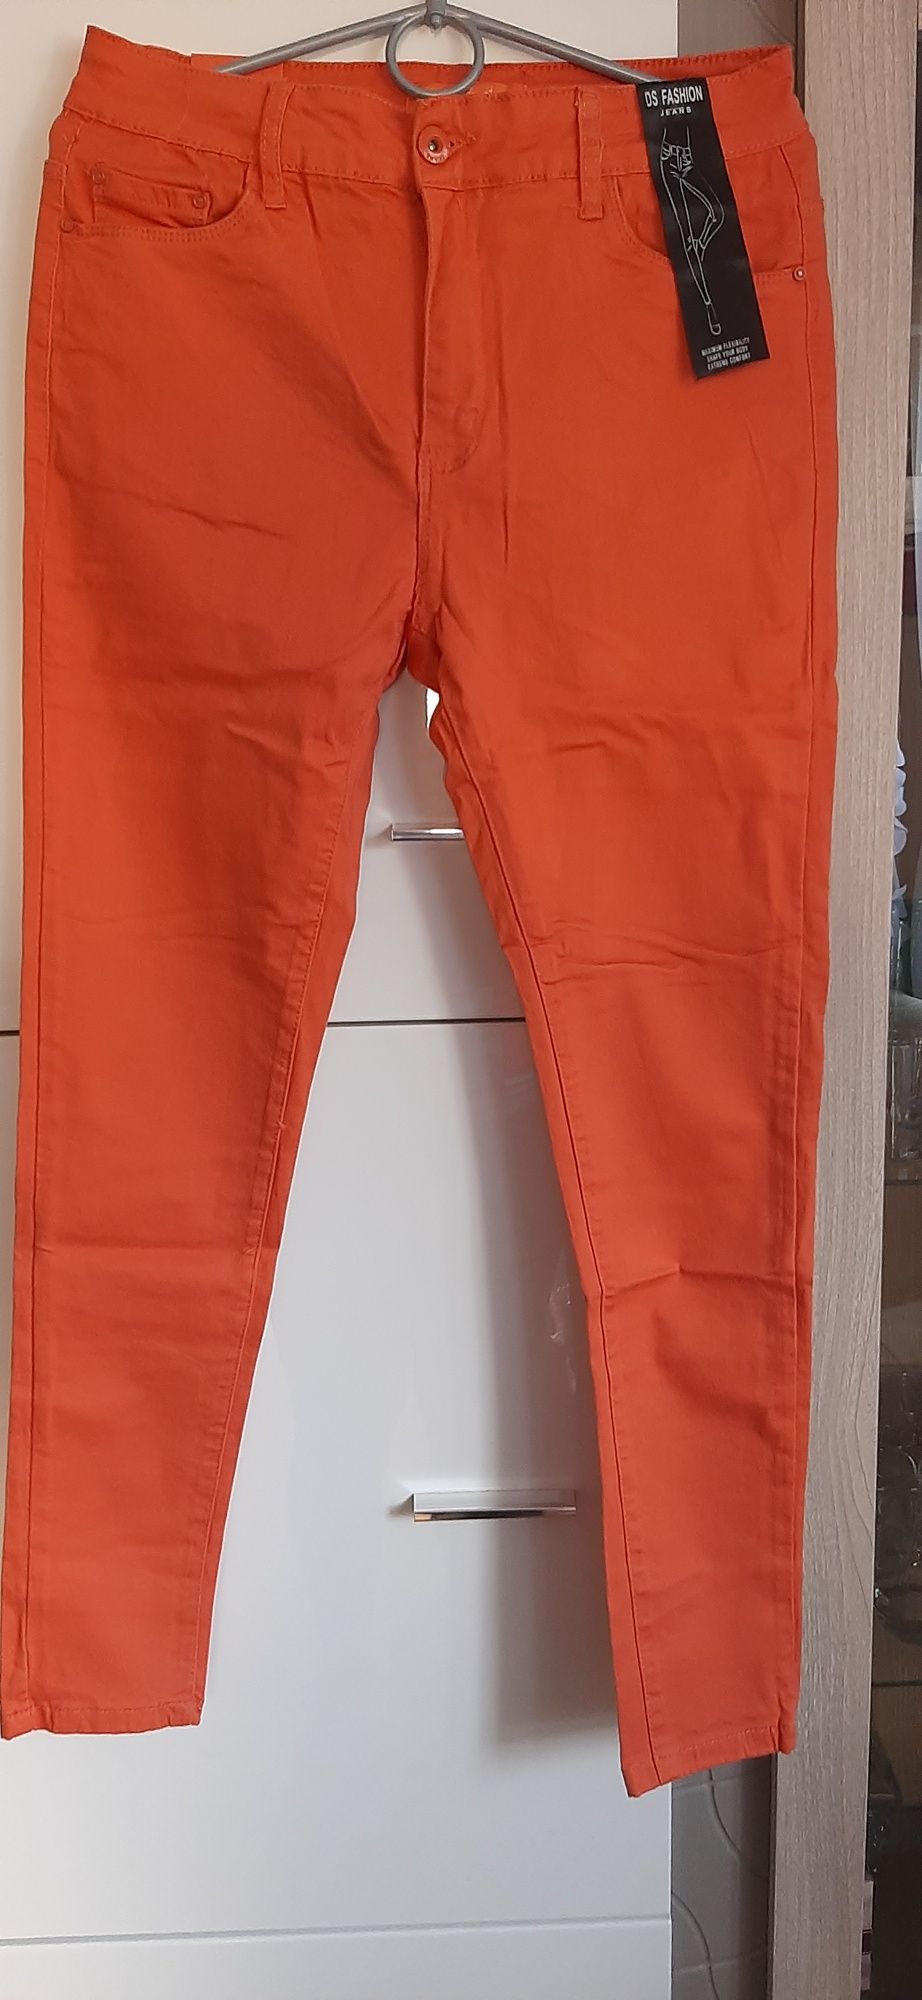 Spodnie pomarancz 42 do 100 w pasie